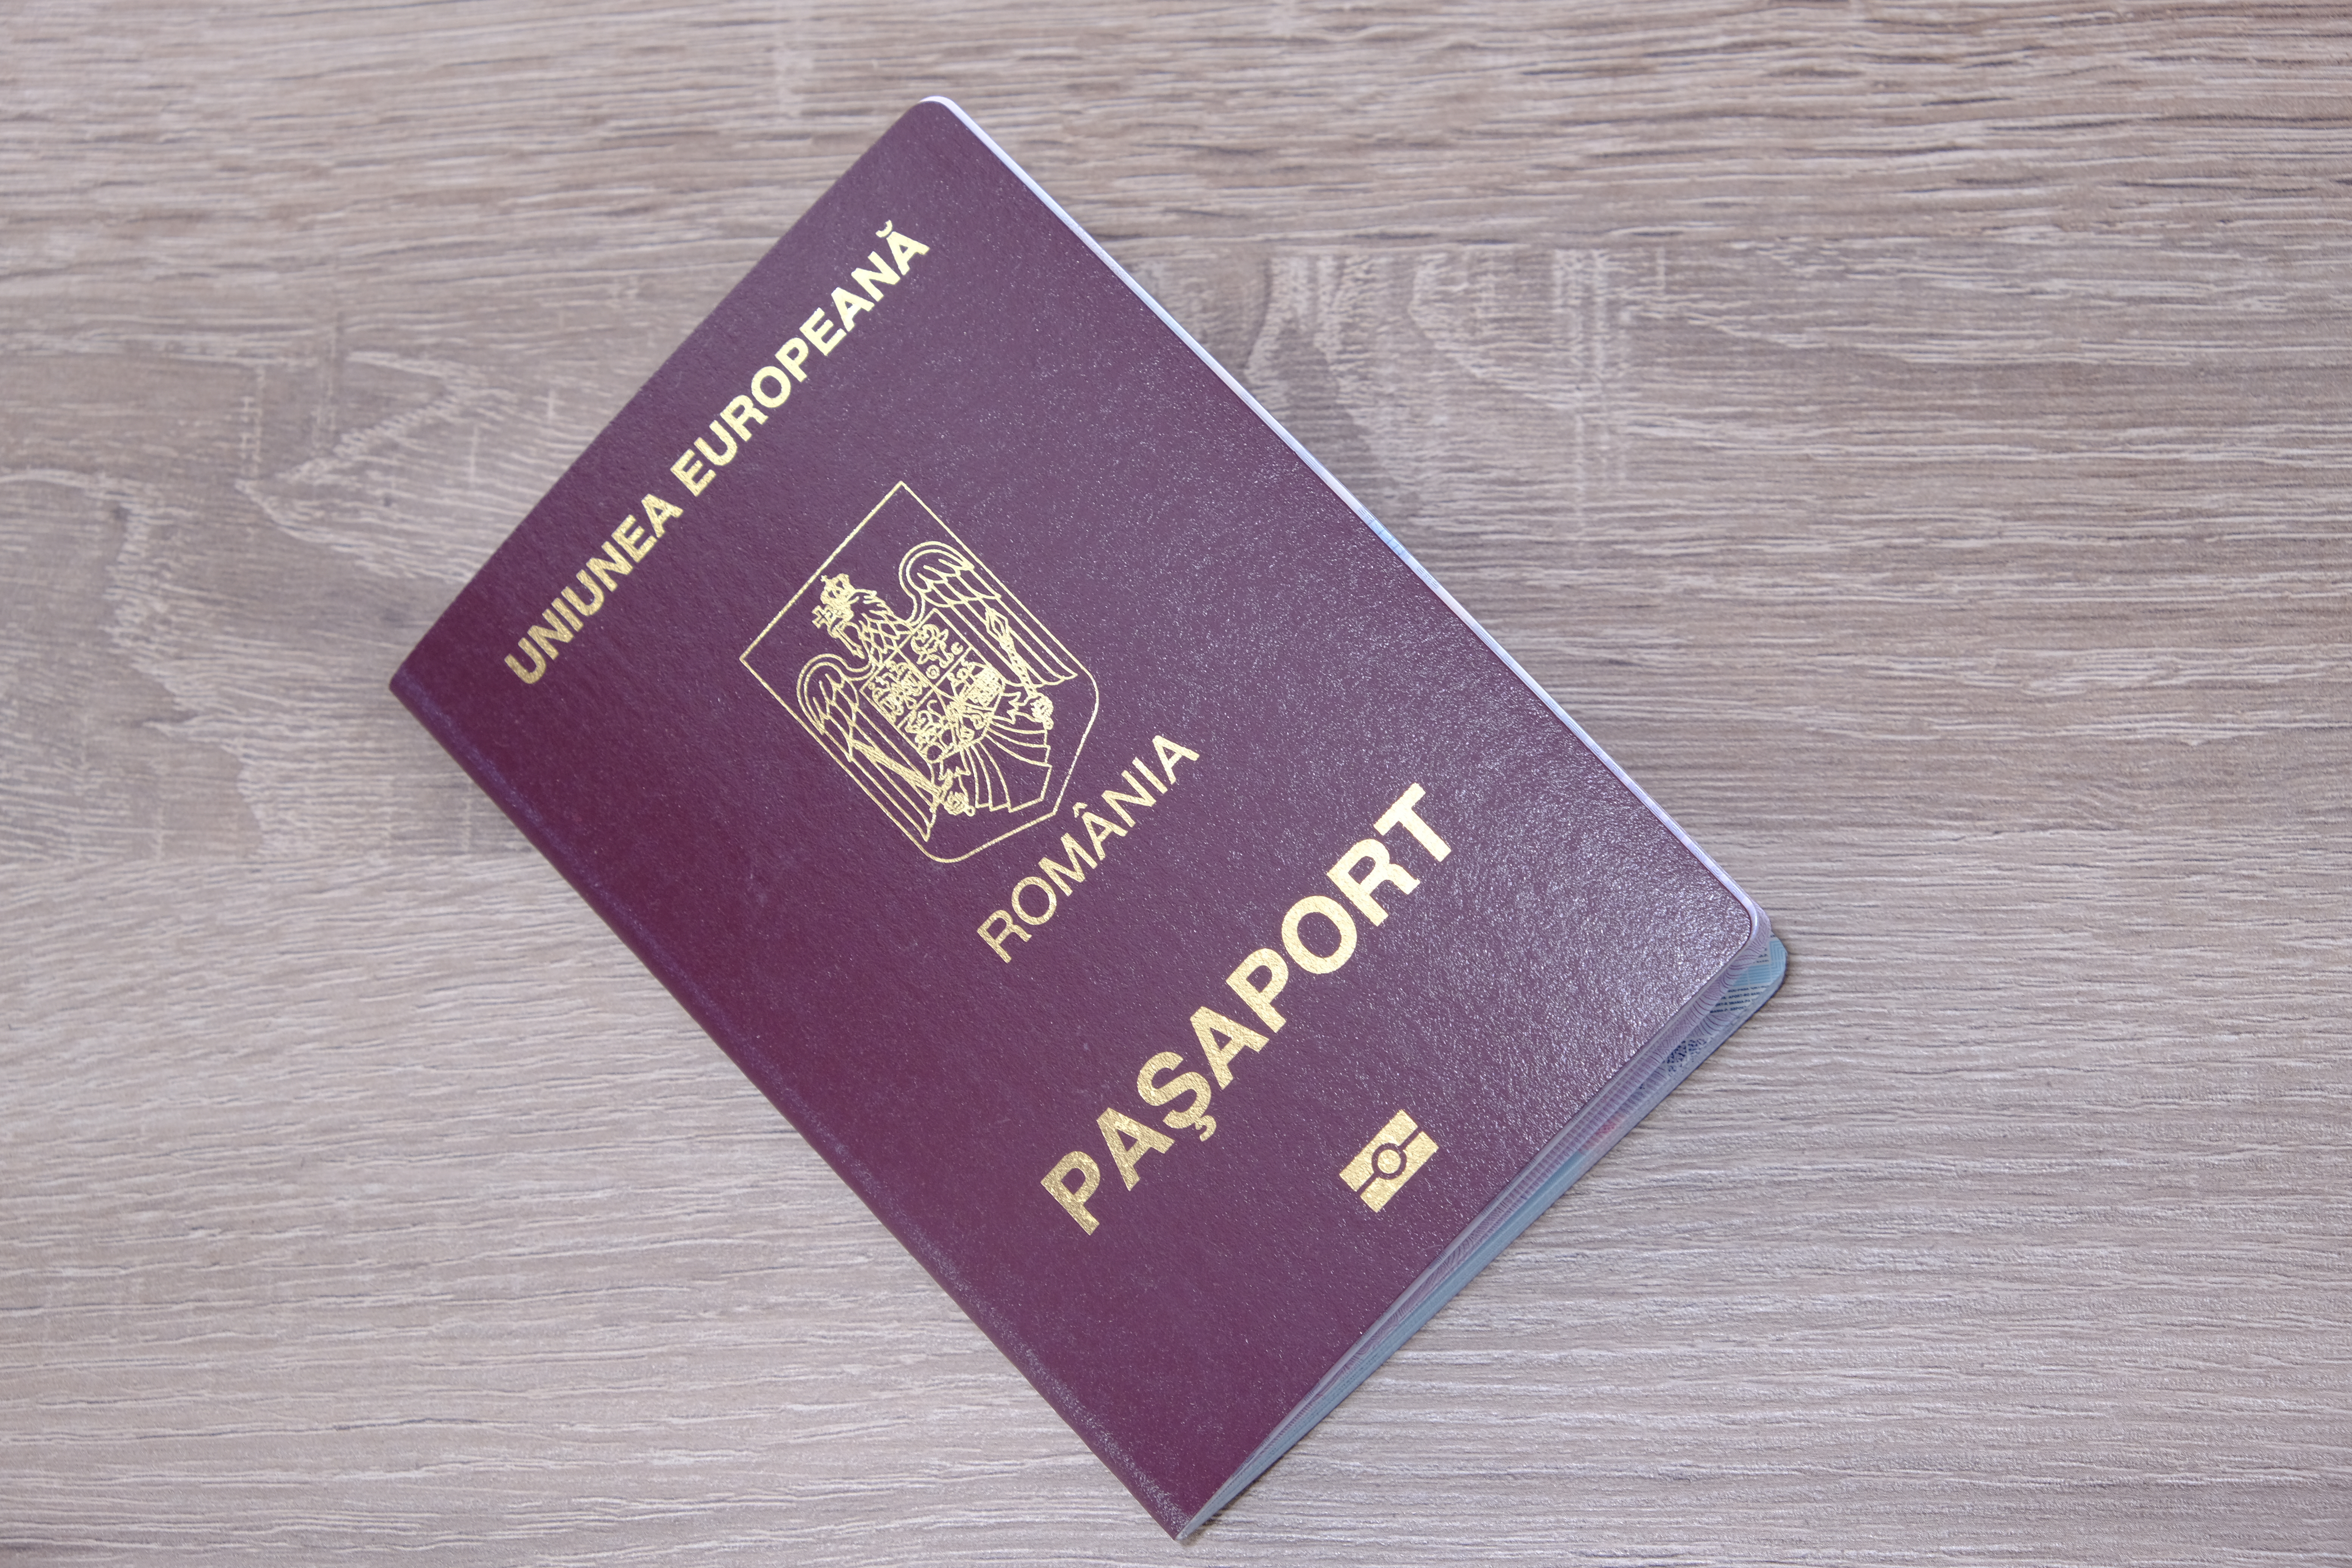 Румынский паспорт, который можно получить, собрав необходимые документы